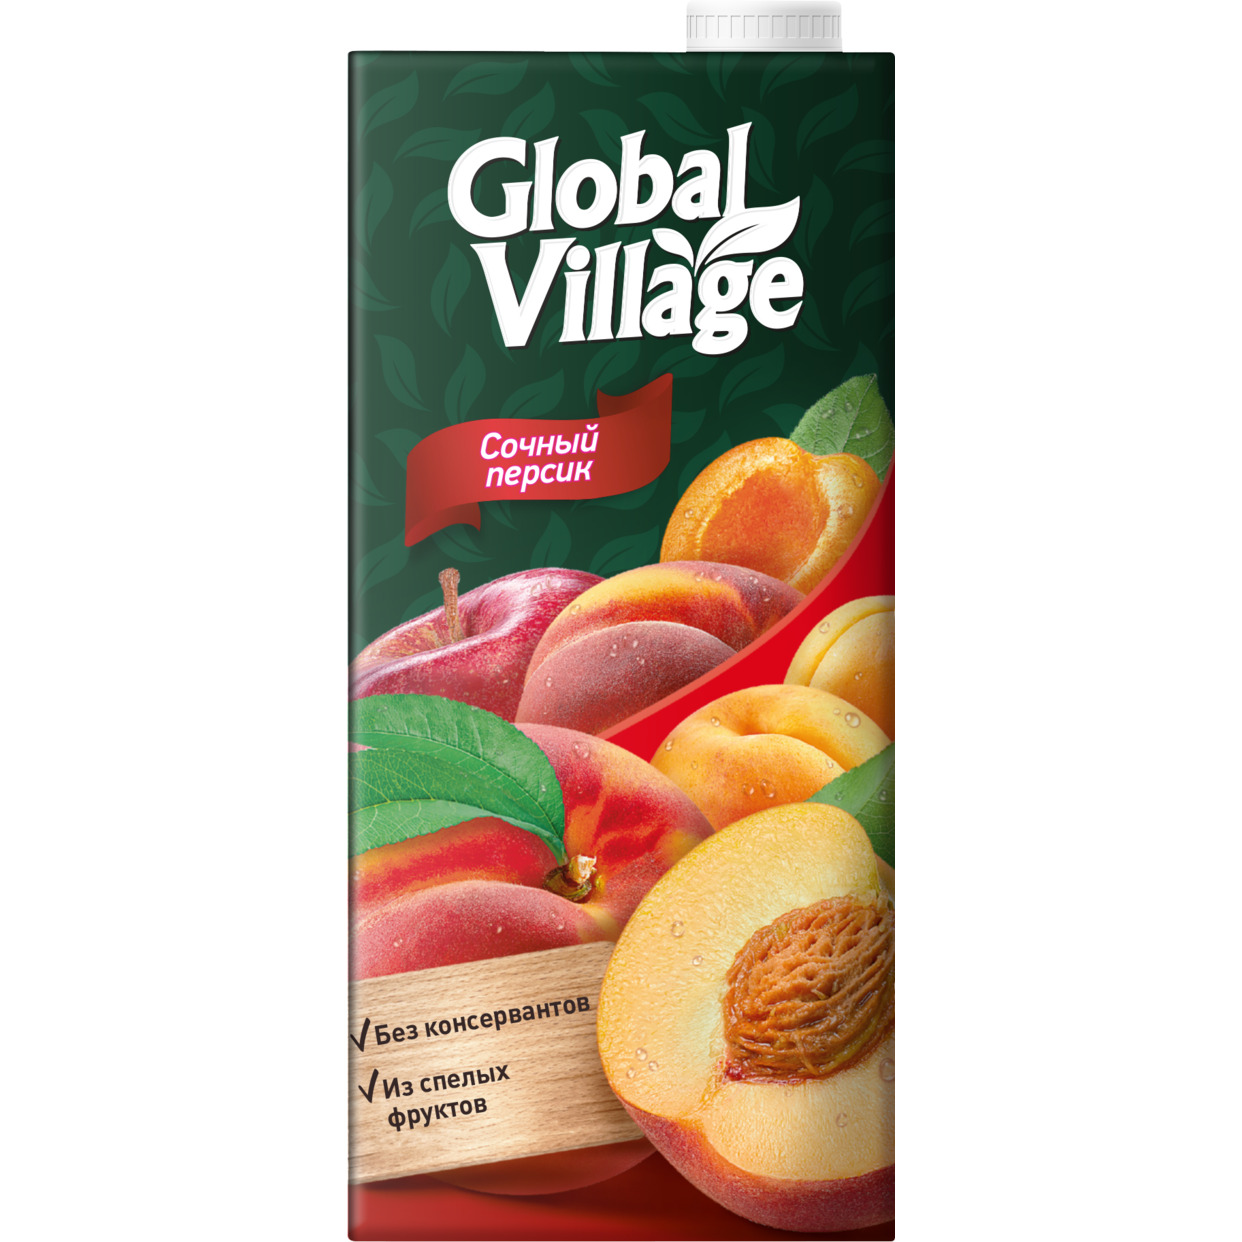 Сокосодержащий напиток из персиков, яблок и абрикосов ТМ «Global Village» для детей дошкольного и школьного возраста (от 3 лет) 0,9 5 л. по акции в Пятерочке